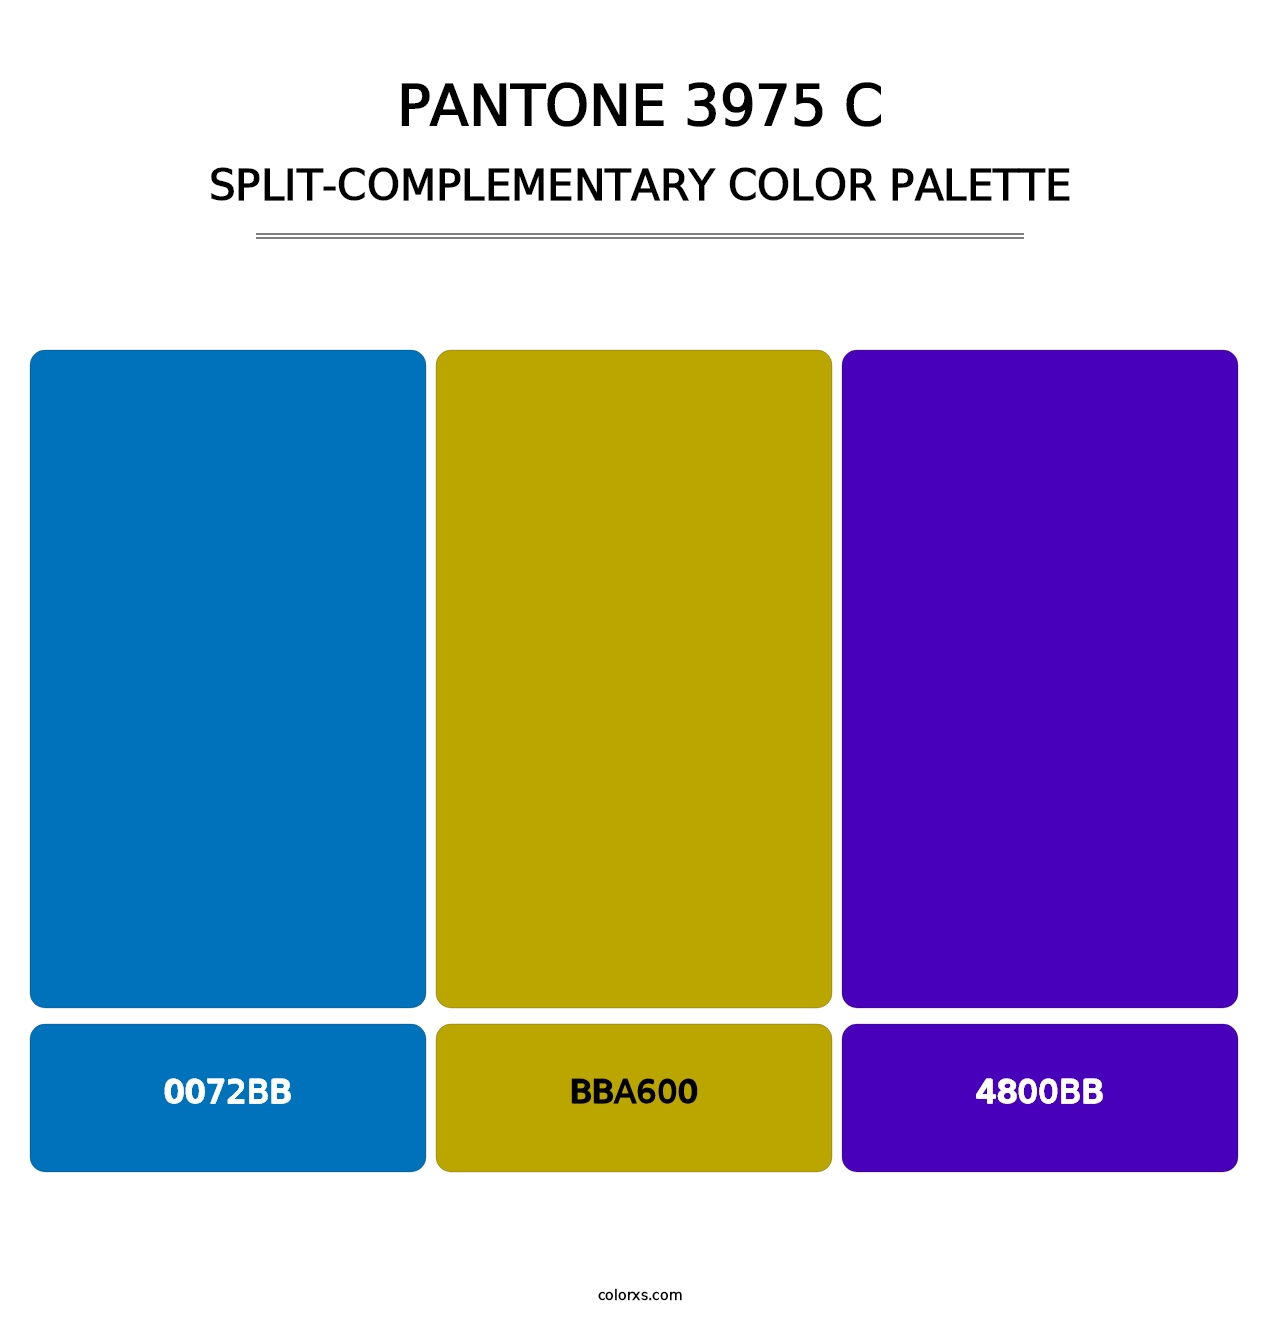 PANTONE 3975 C - Split-Complementary Color Palette